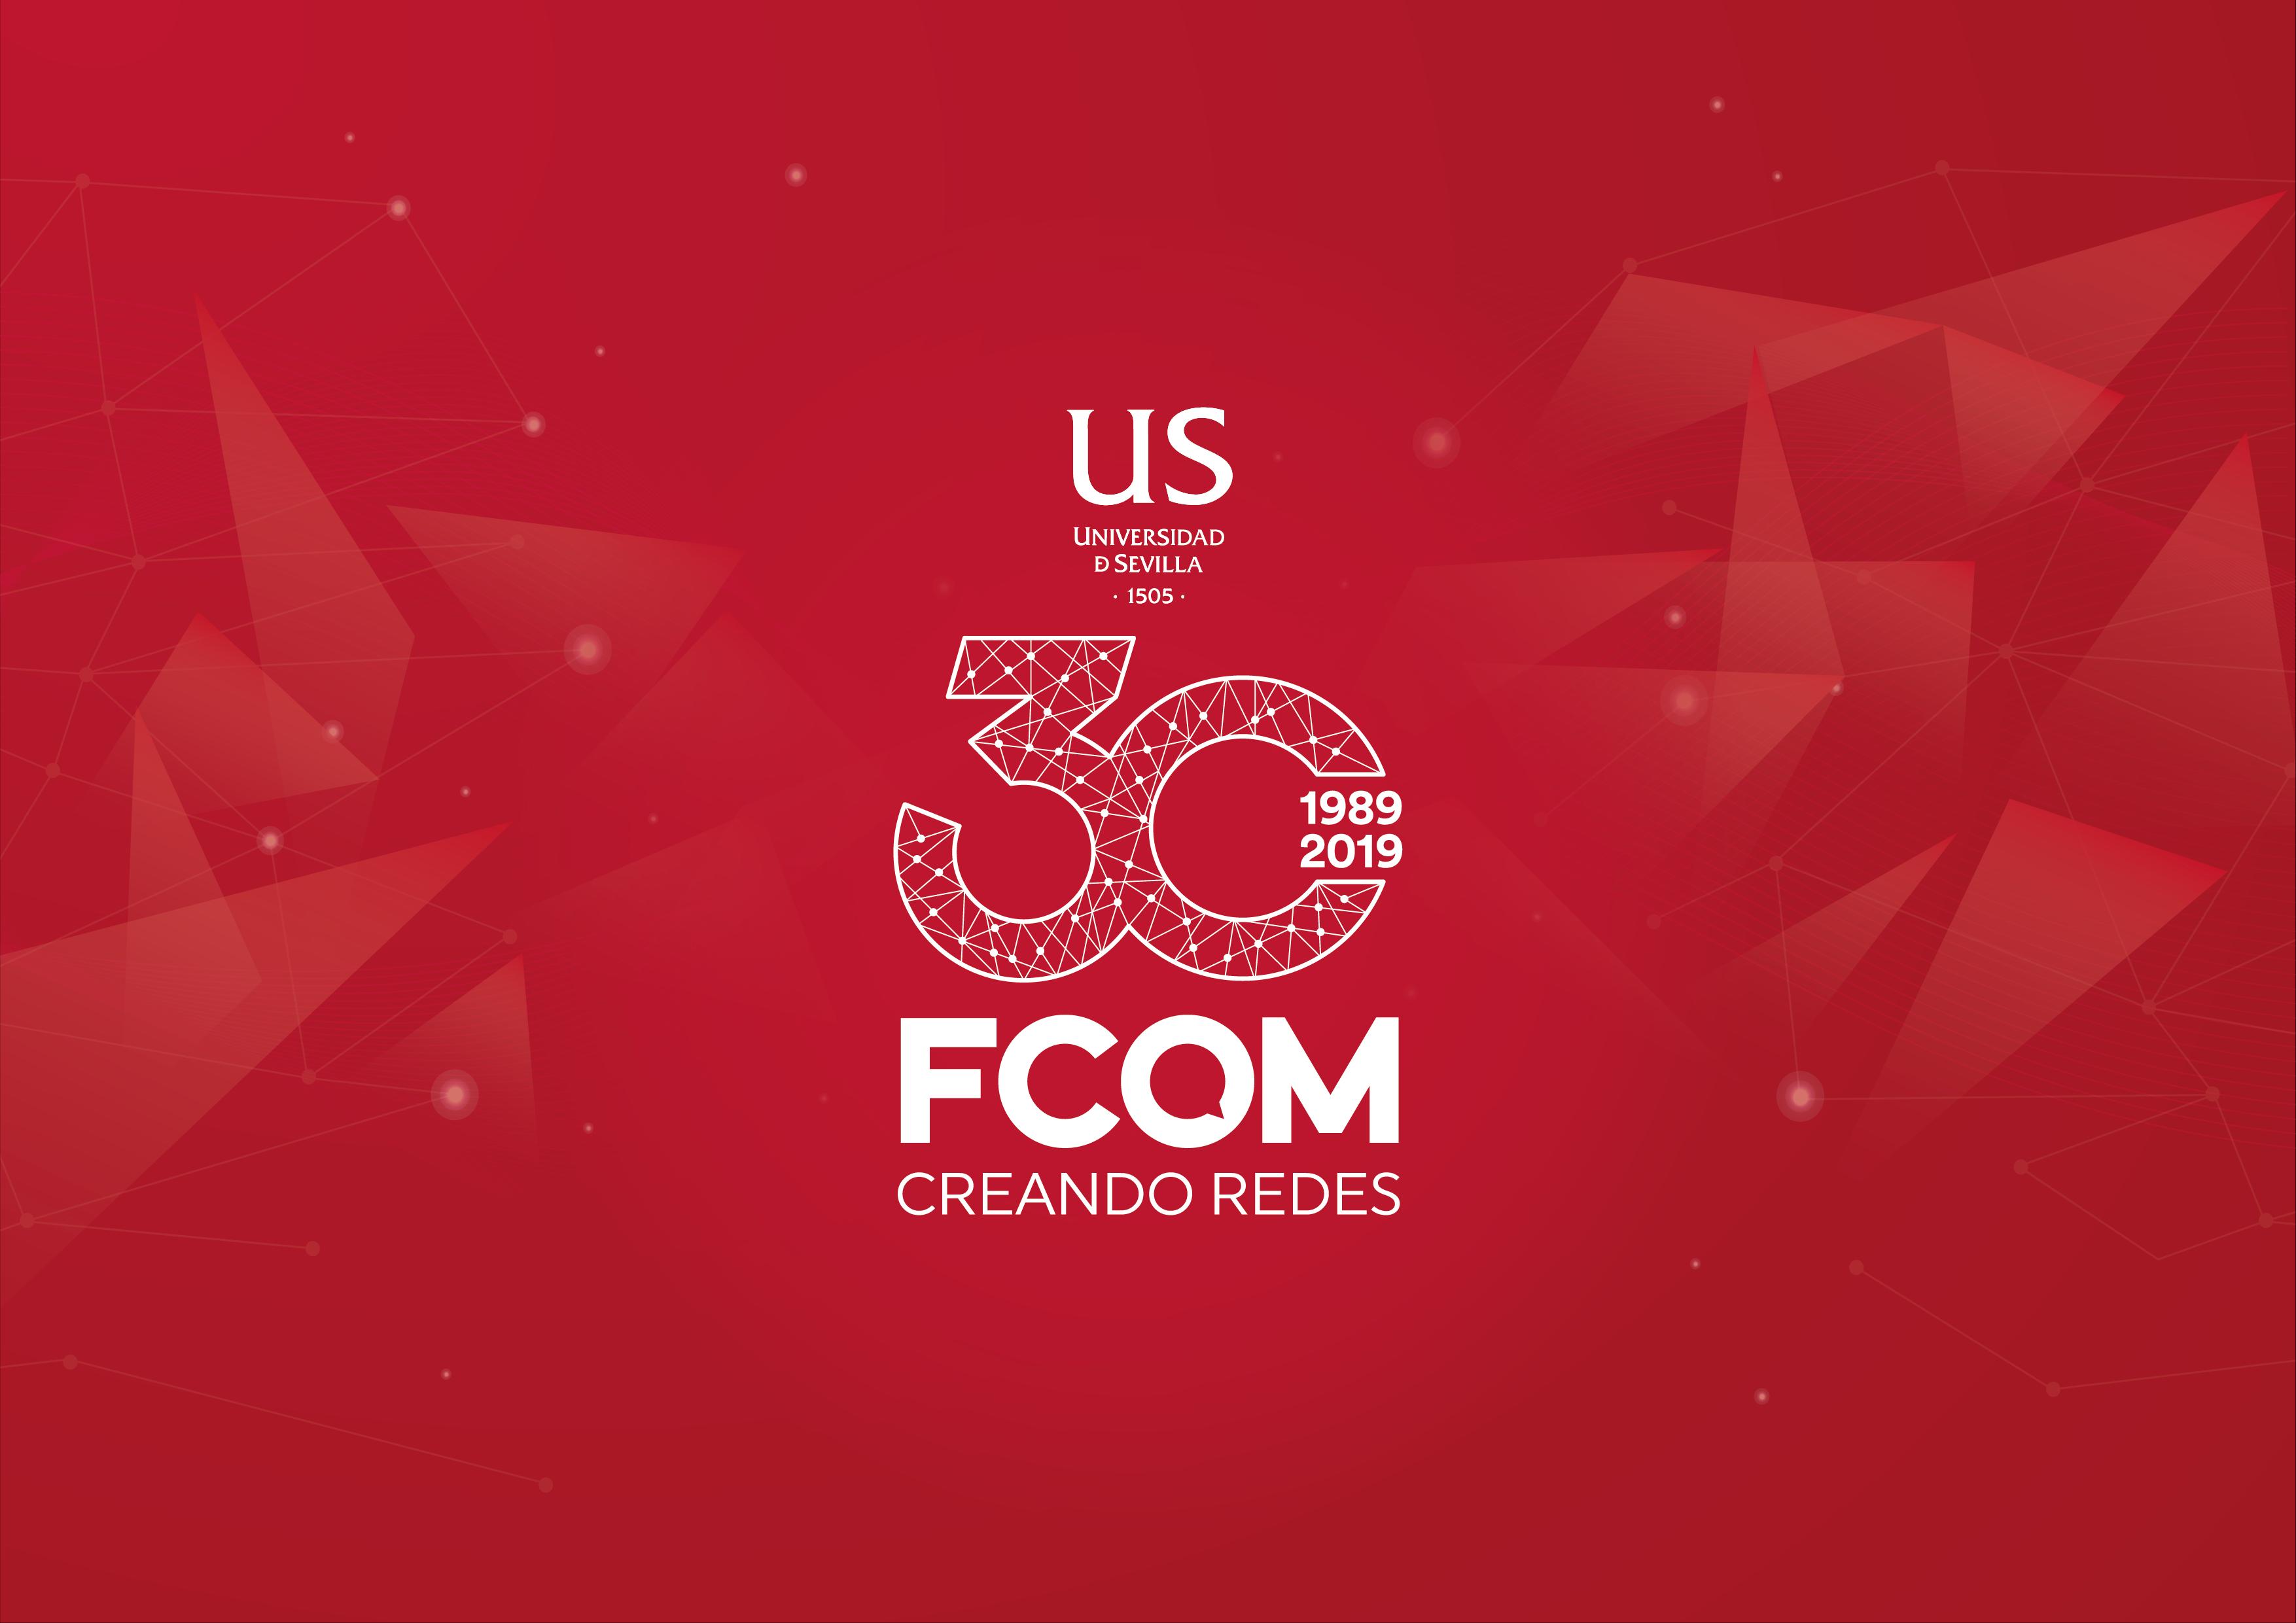 La FCom celebra en 2019 su 30 aniversario